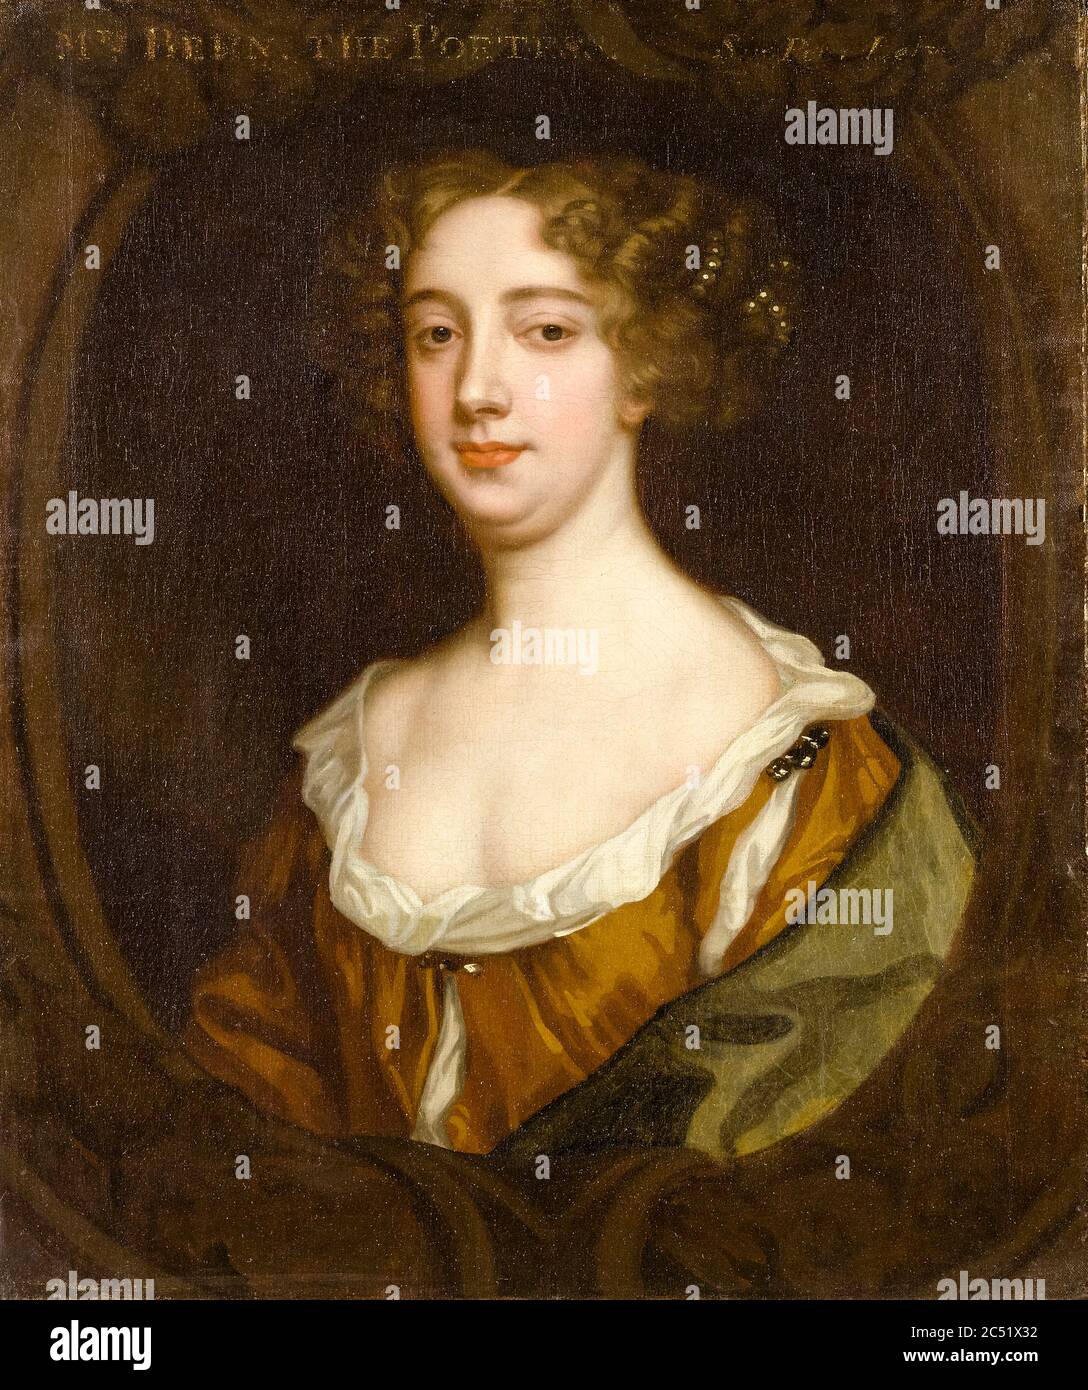 Aphra Behn (1640-1689), drammaturgo inglese, poeta, traduttore e scrittore di fiction, ritratto di Sir Peter Lely, circa 1670 Foto Stock